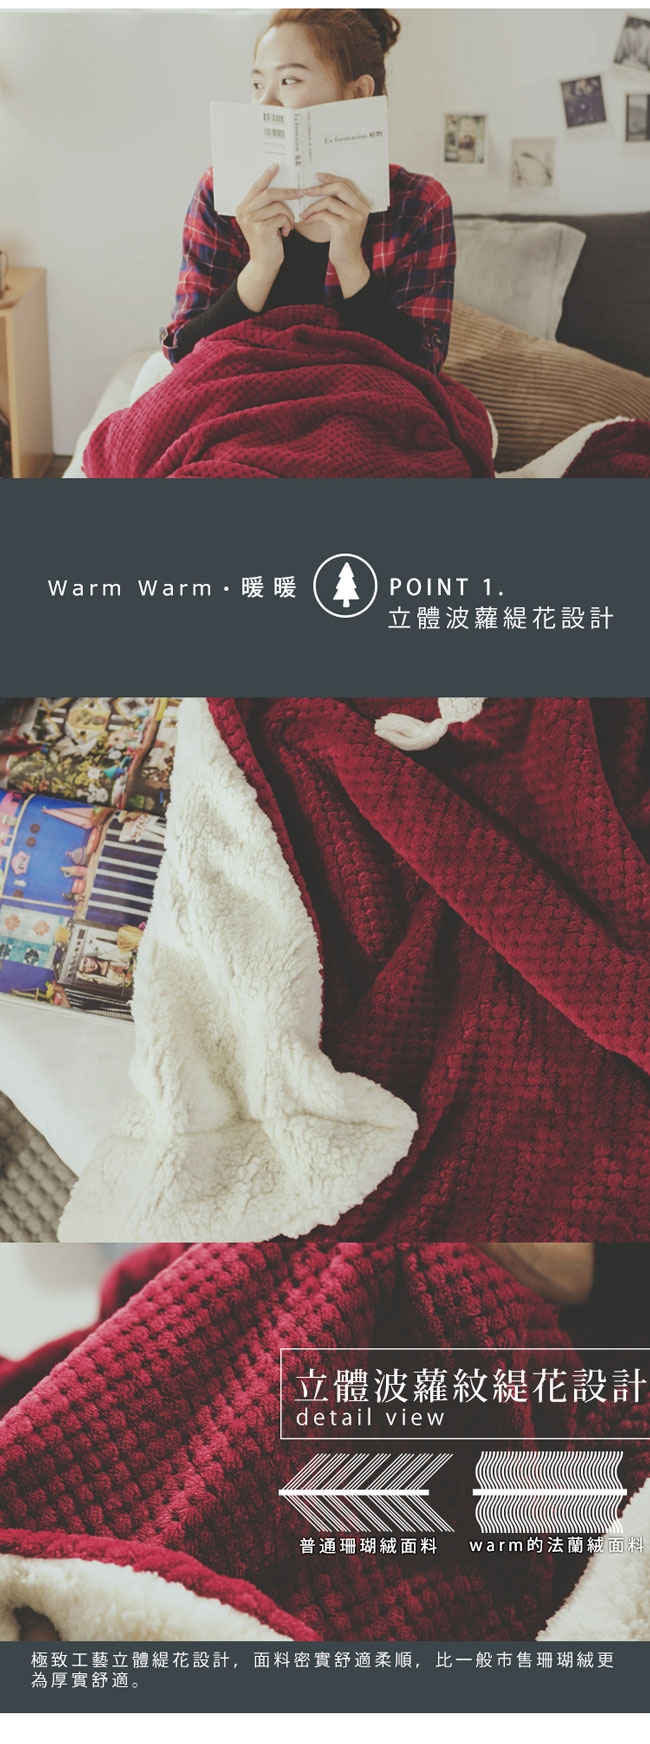 絲薇諾 Warm Warm羊羔絨毯/毛毯 (四色)